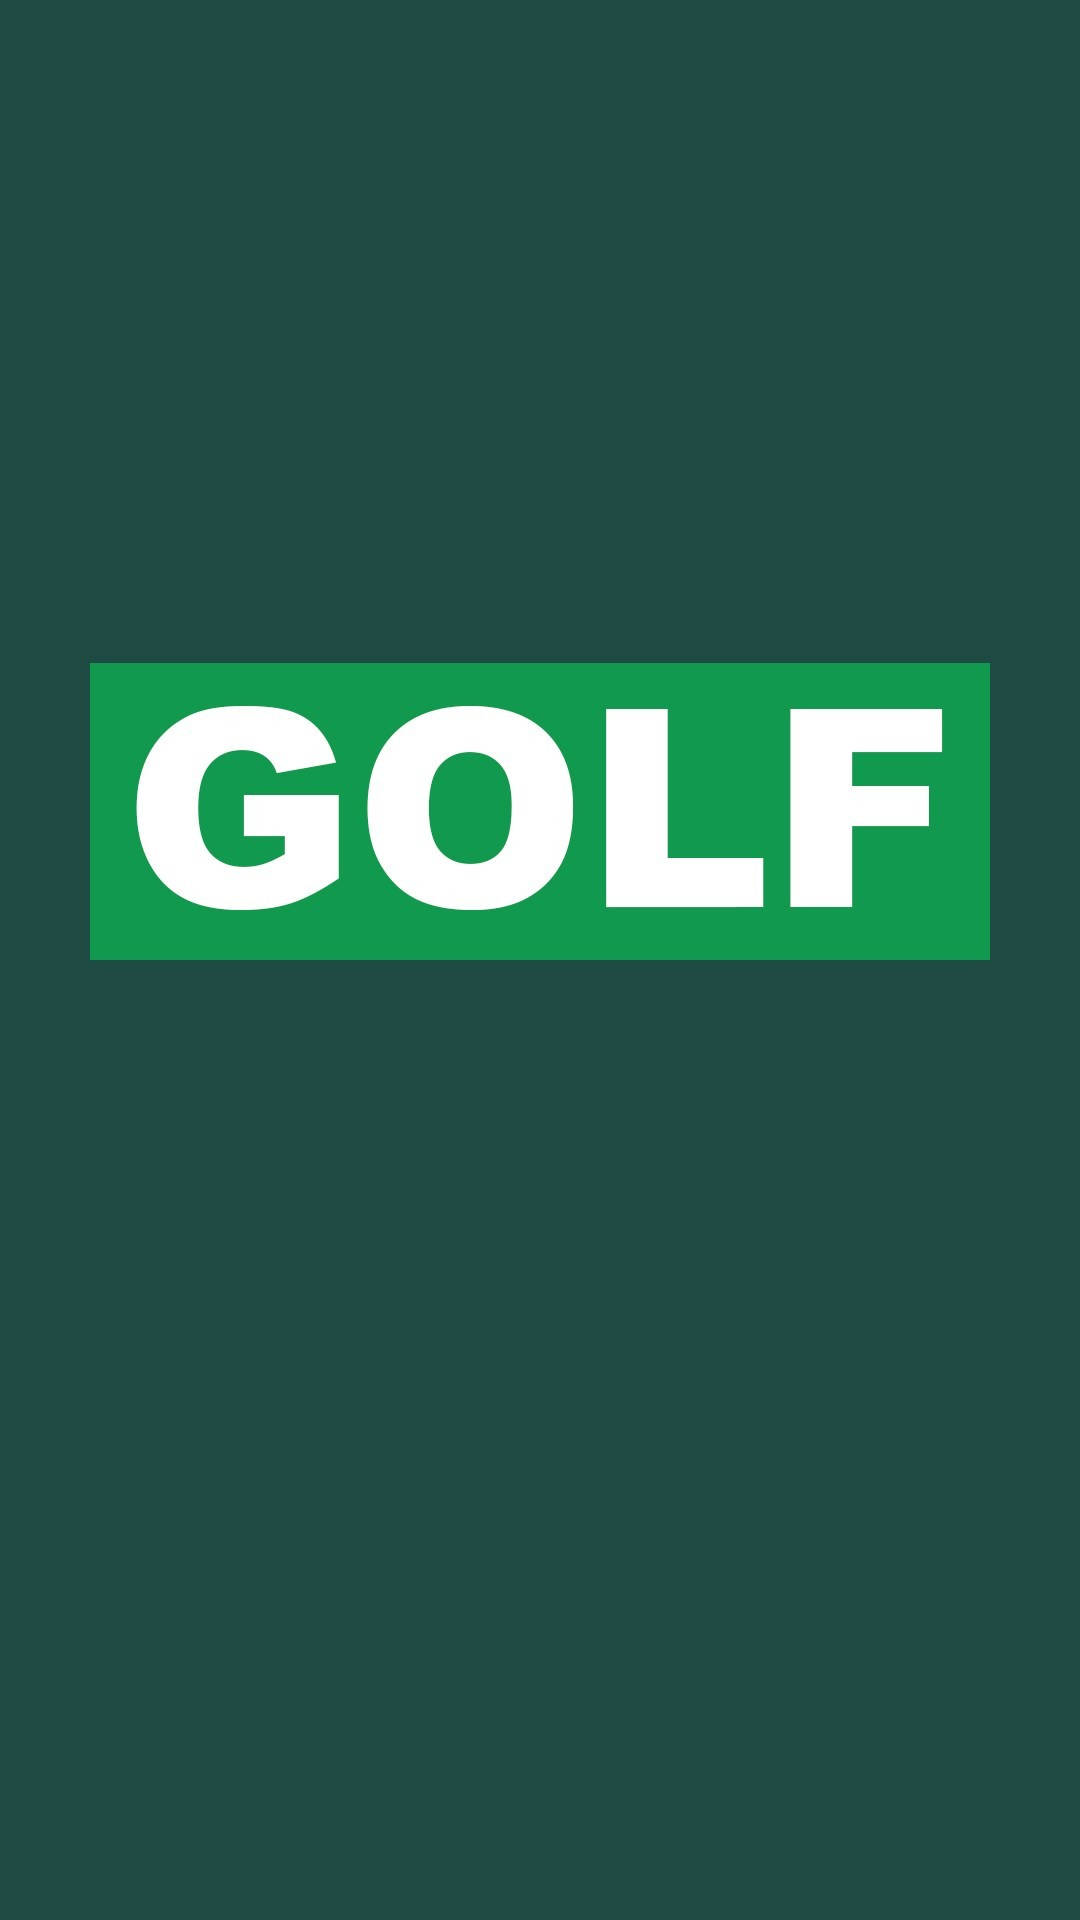 Green Golf Text Iphone